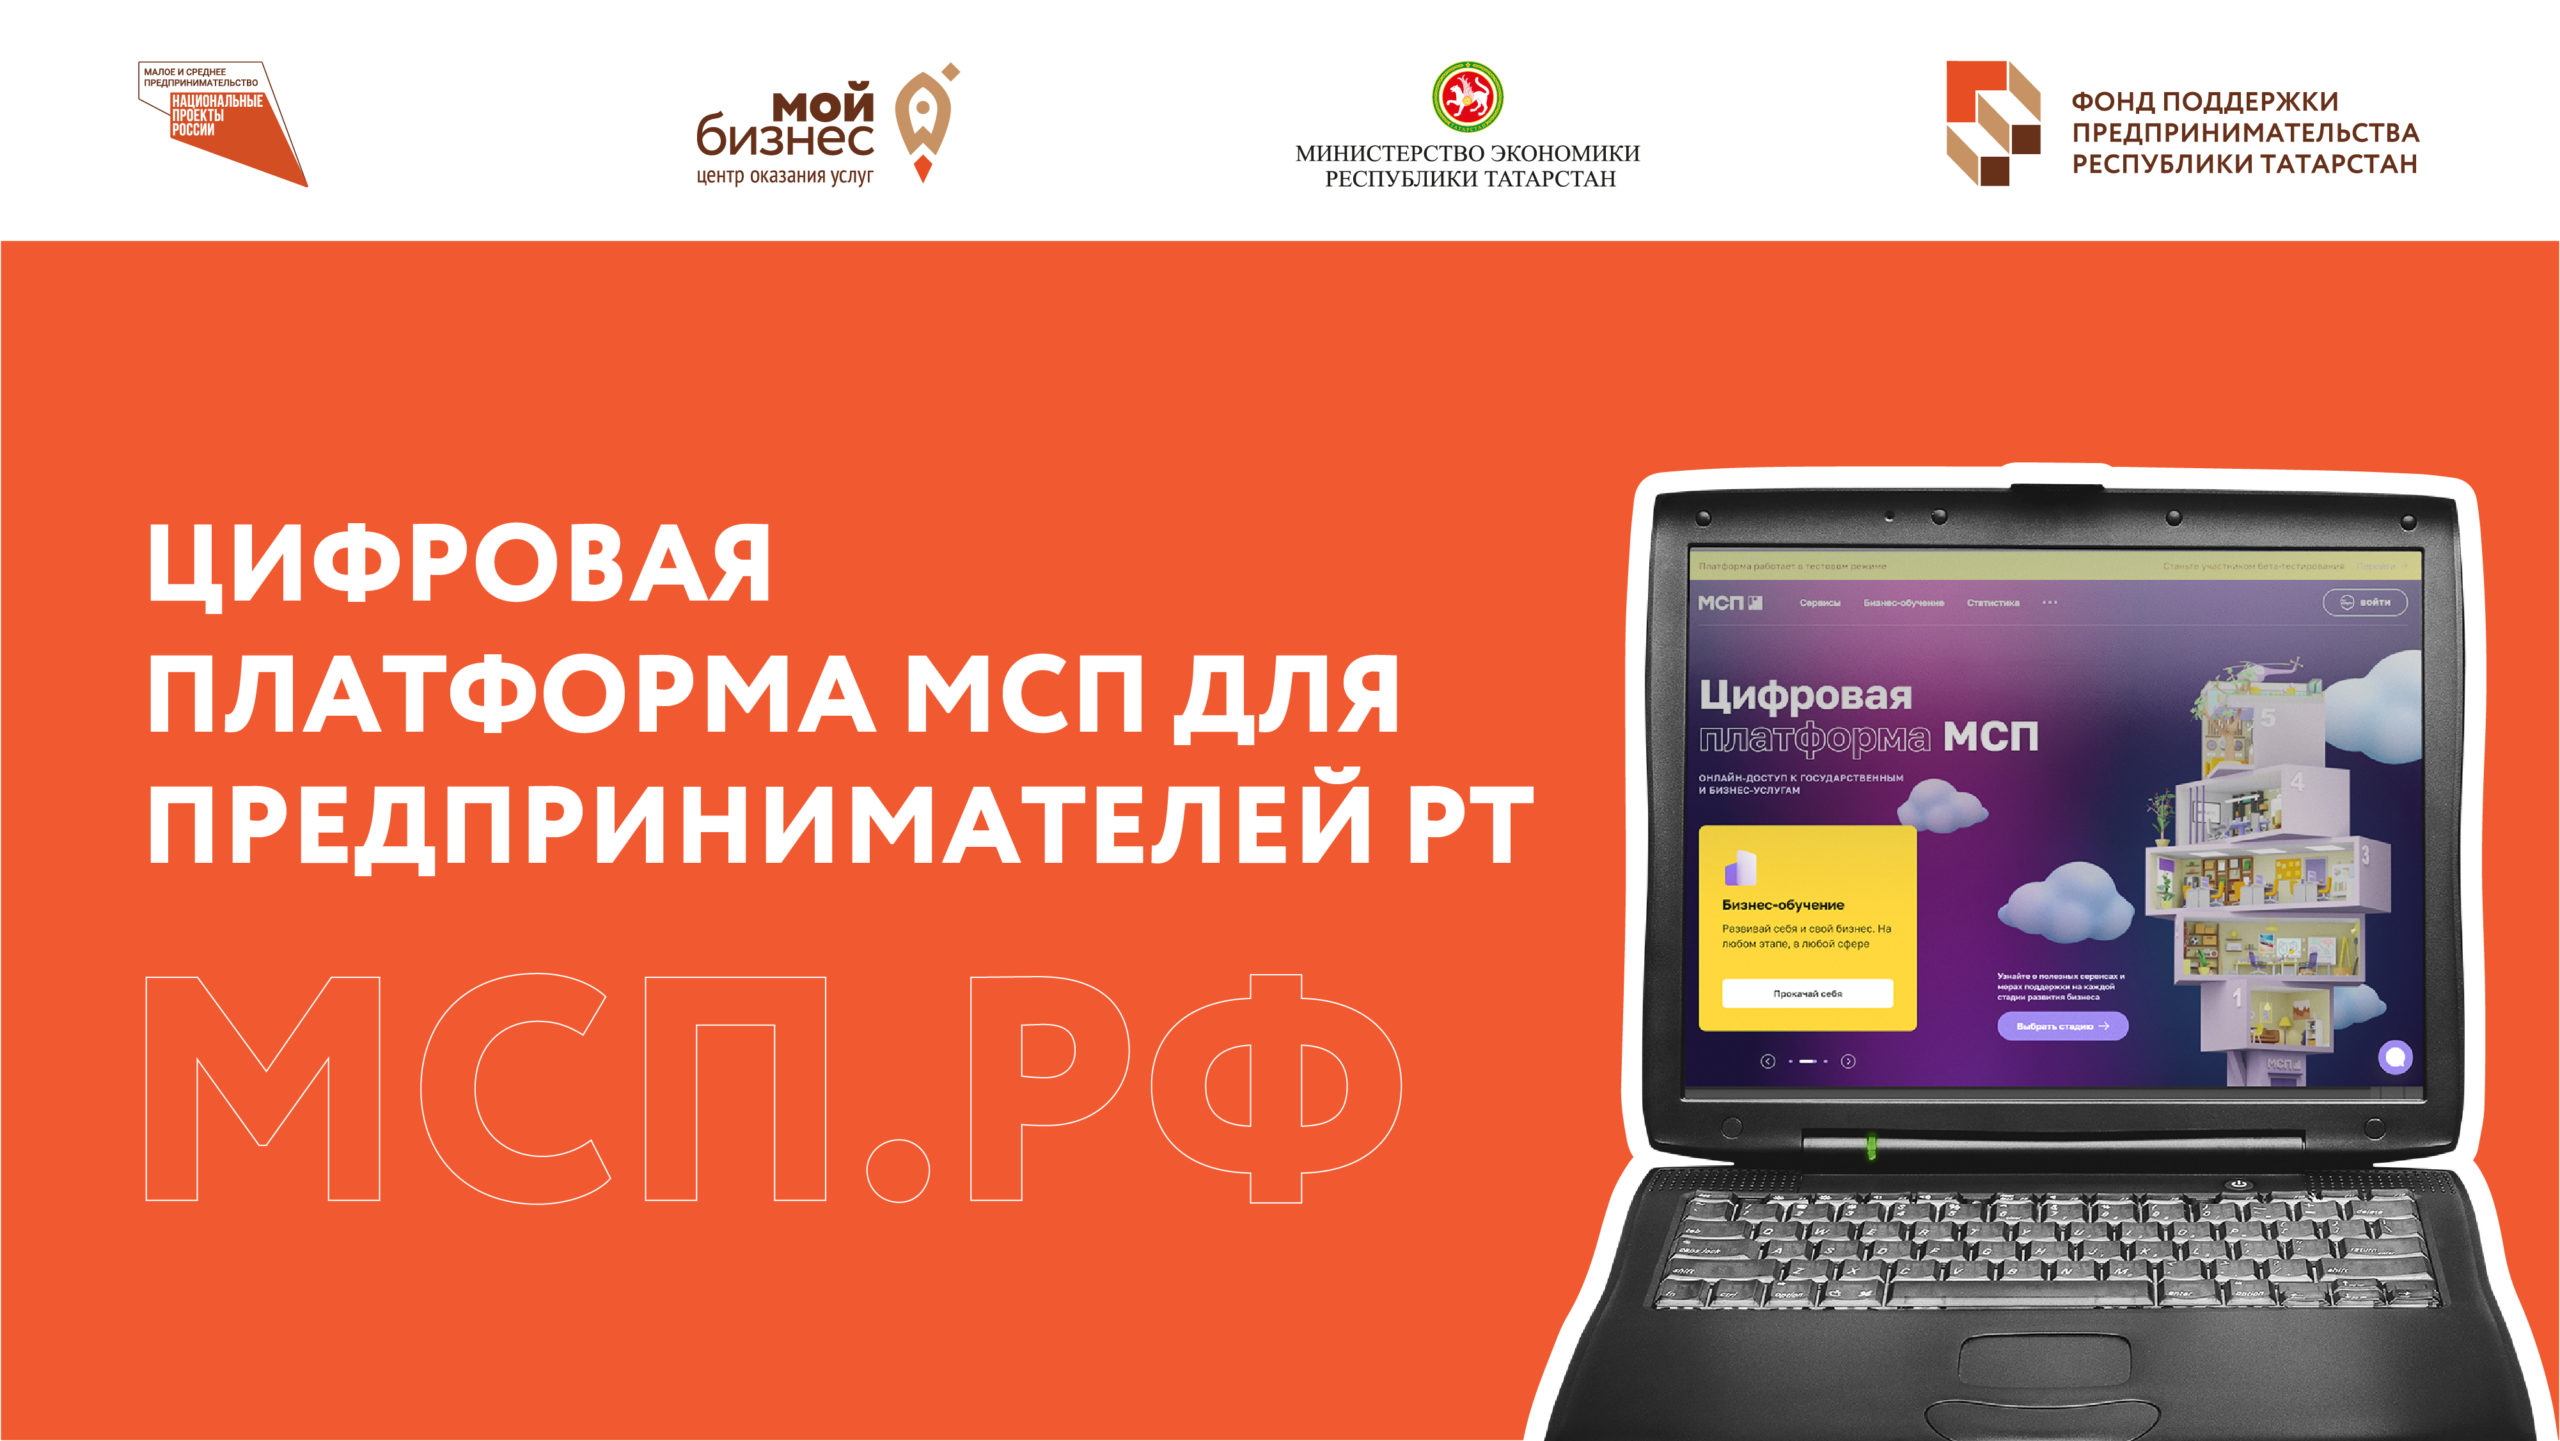 Сервисы Цифровой платформы МСП стали доступны всем предпринимателям Татарстана